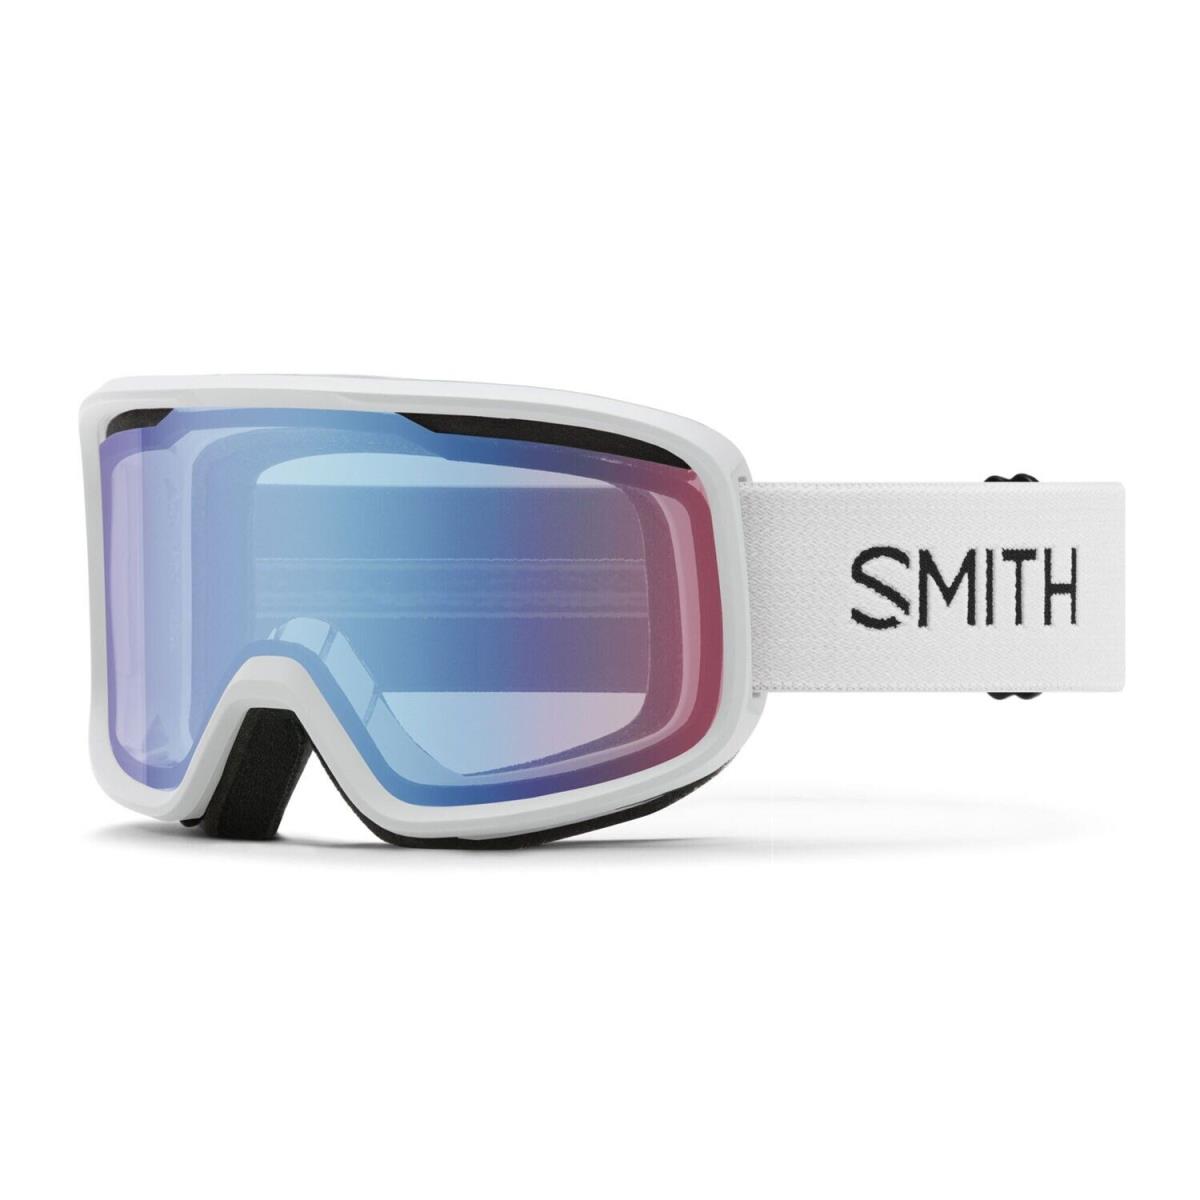 Smith Frontier Ski / Snow Goggles White Frame Blue Sensor Mirror Lens